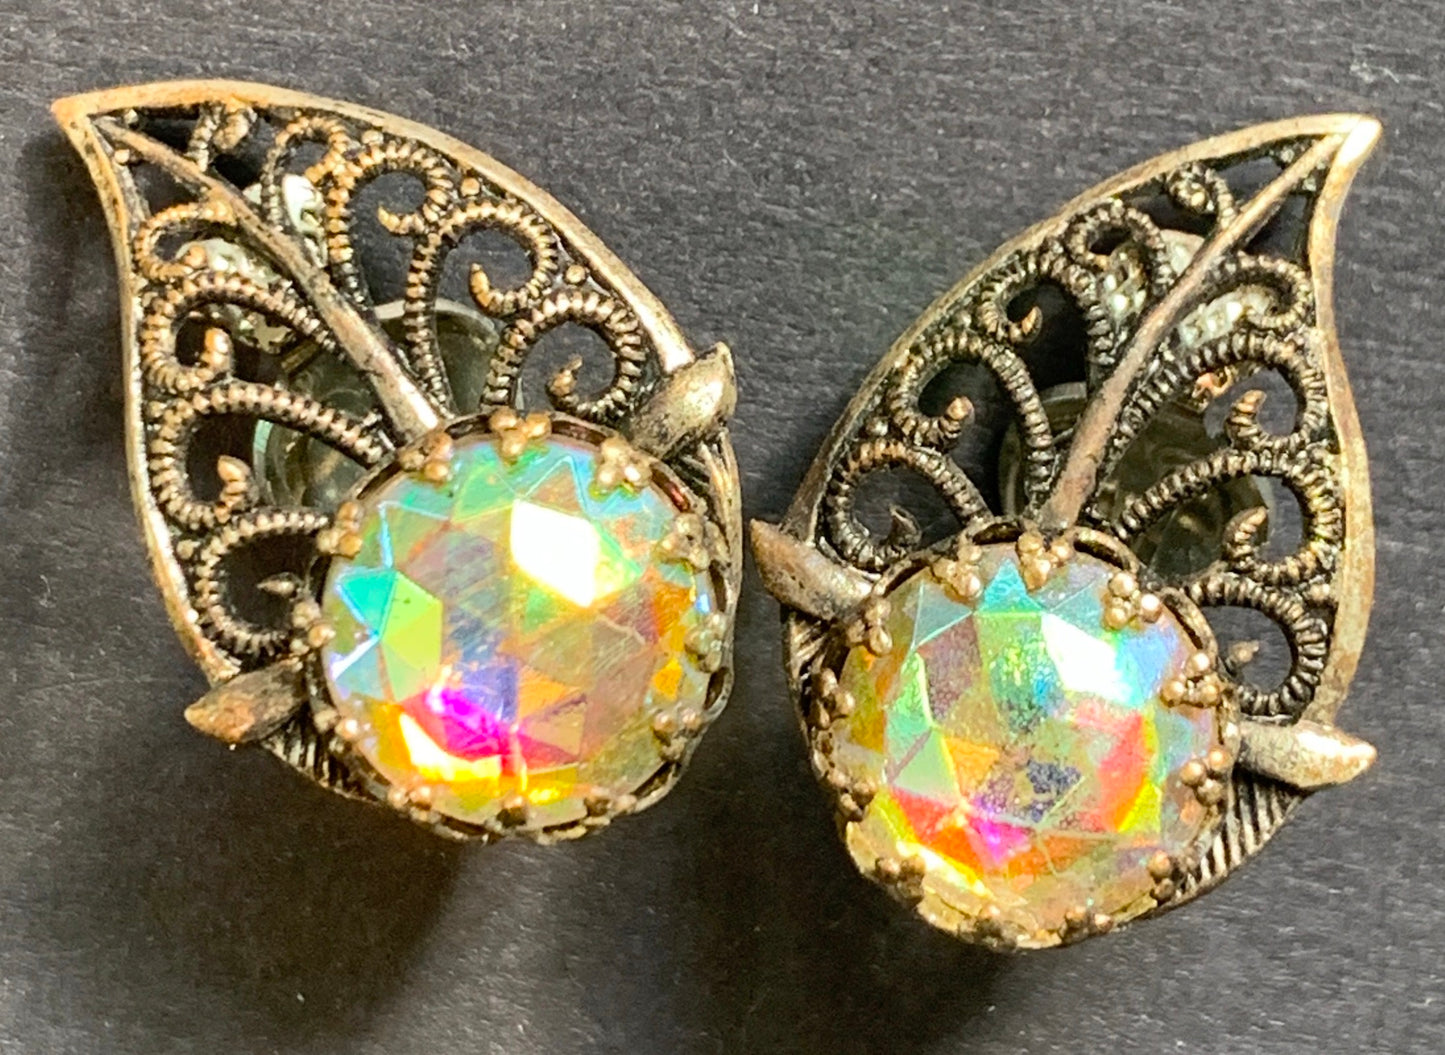 Vintage Filligree and Aurora Borealis Leaf Clip On Earrings